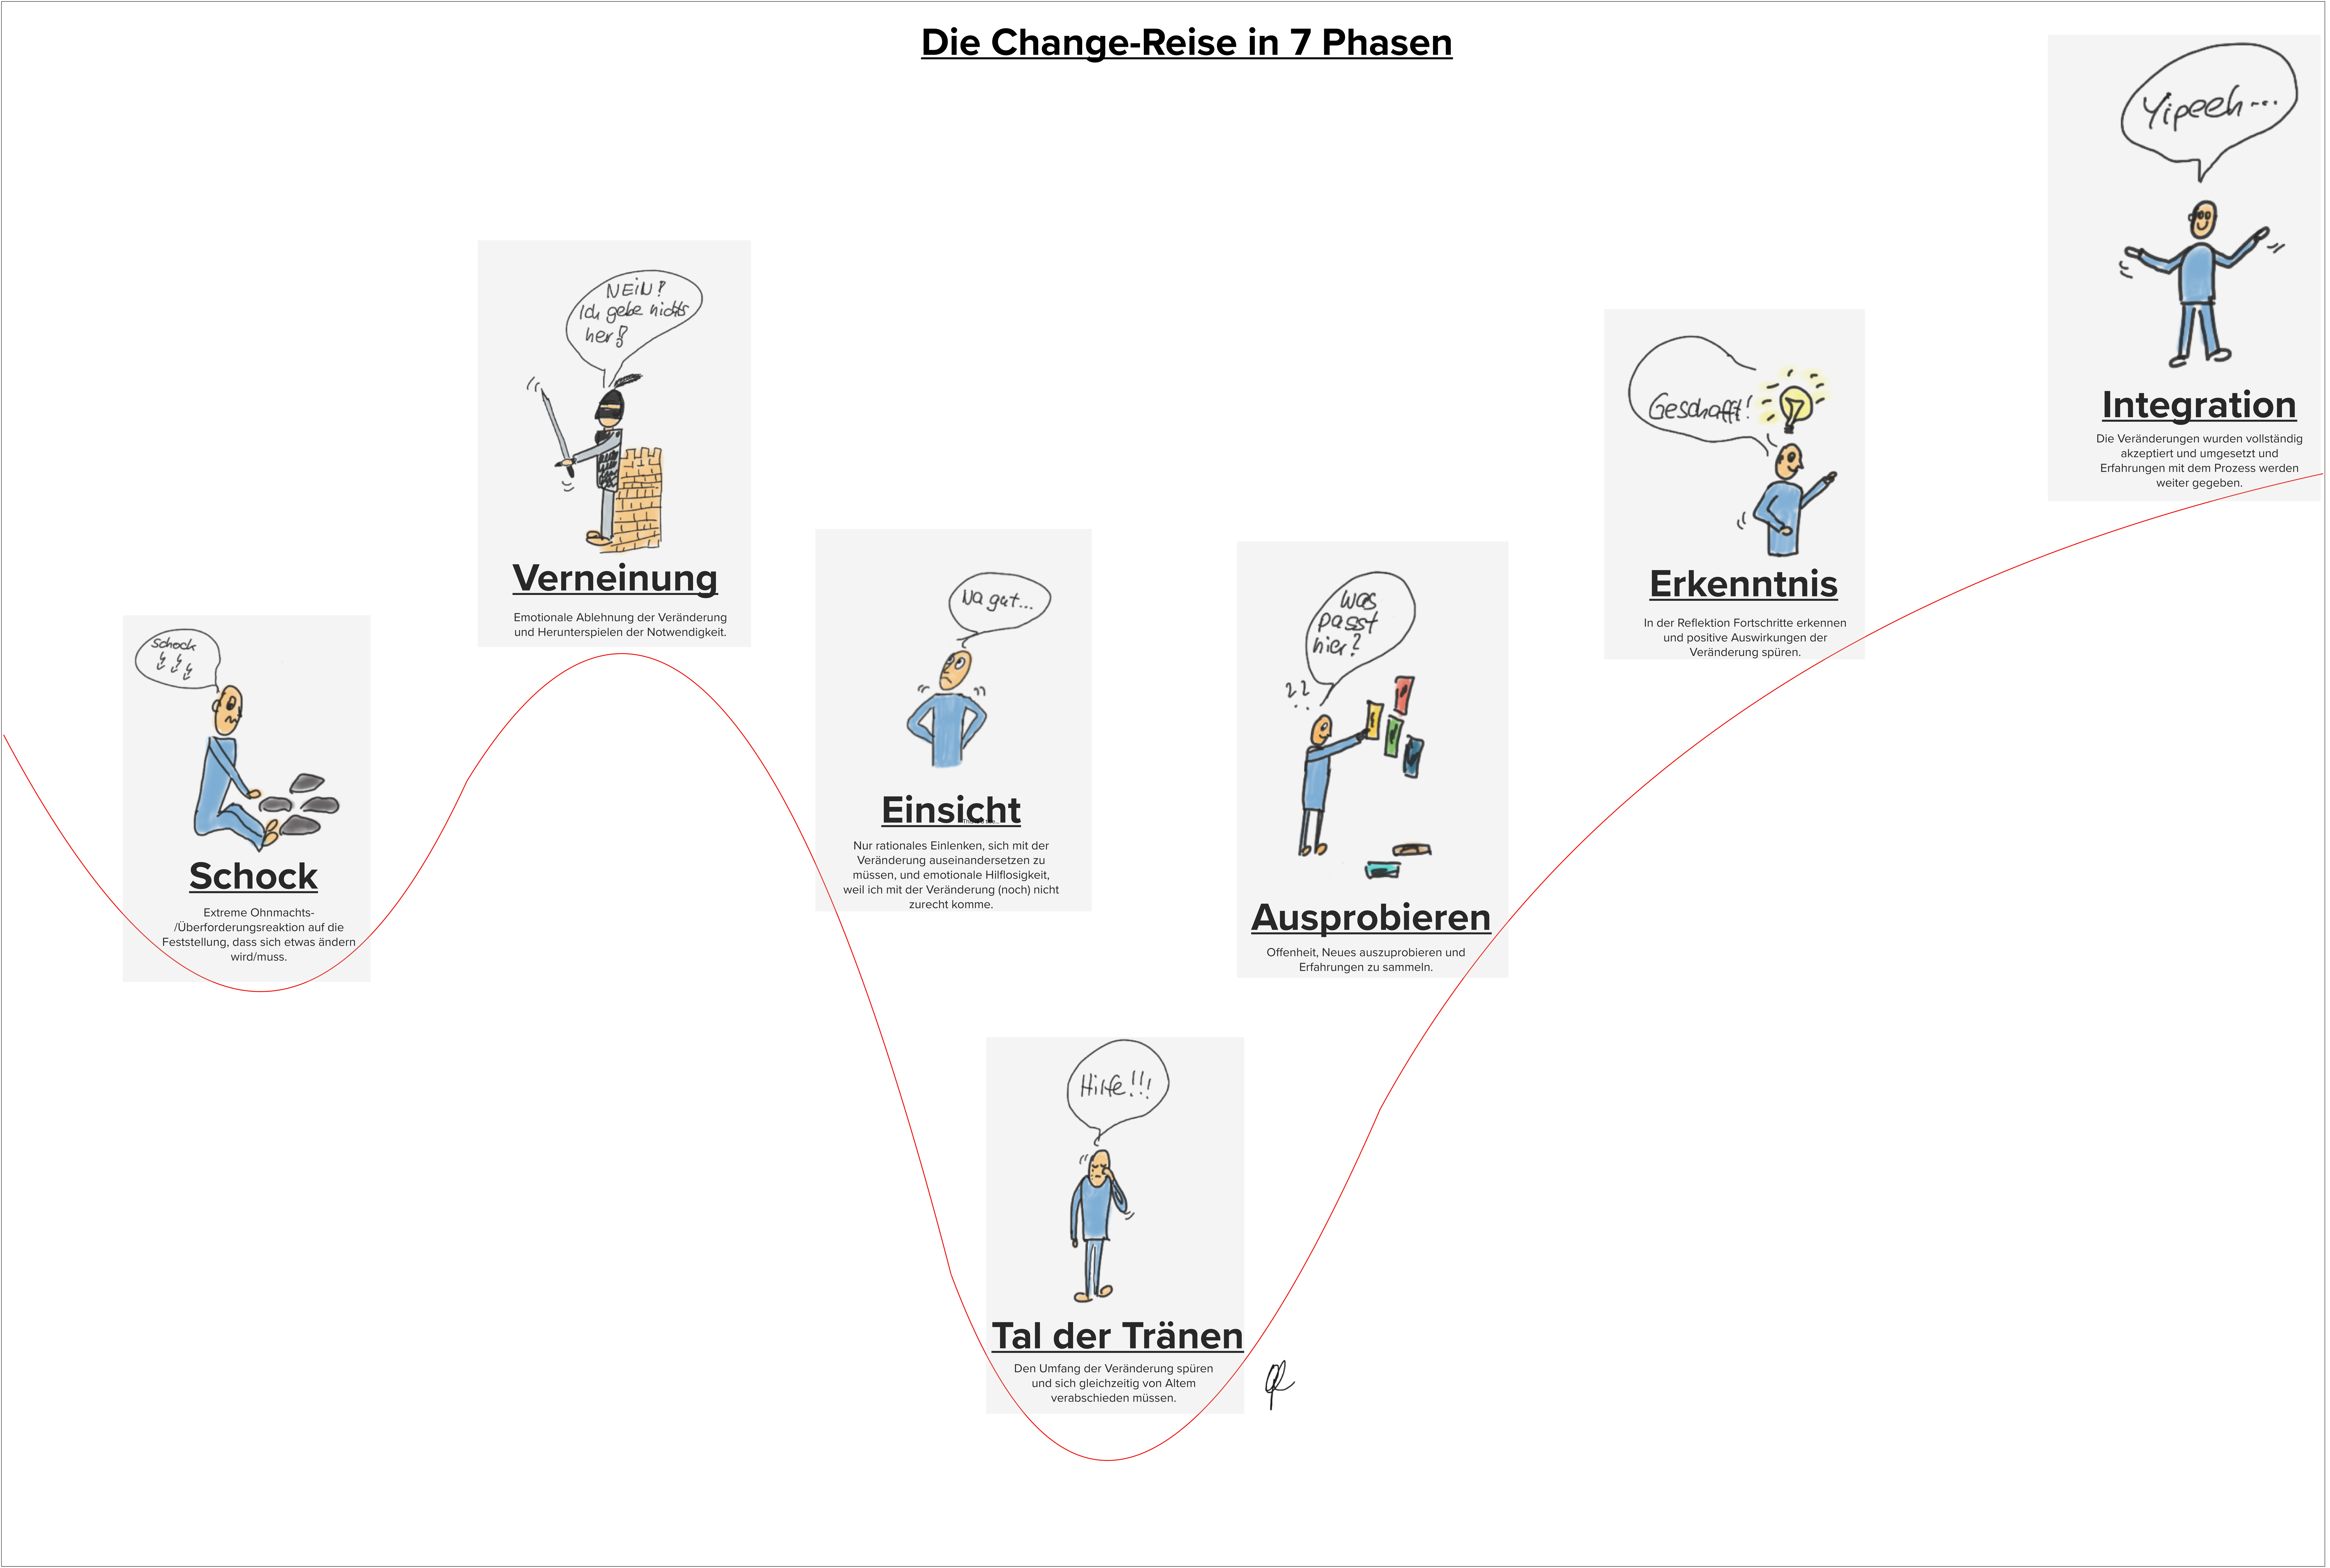 kompetenzen:change_transformation_management:change-reise:die_change-reise_in_7_phasen.png